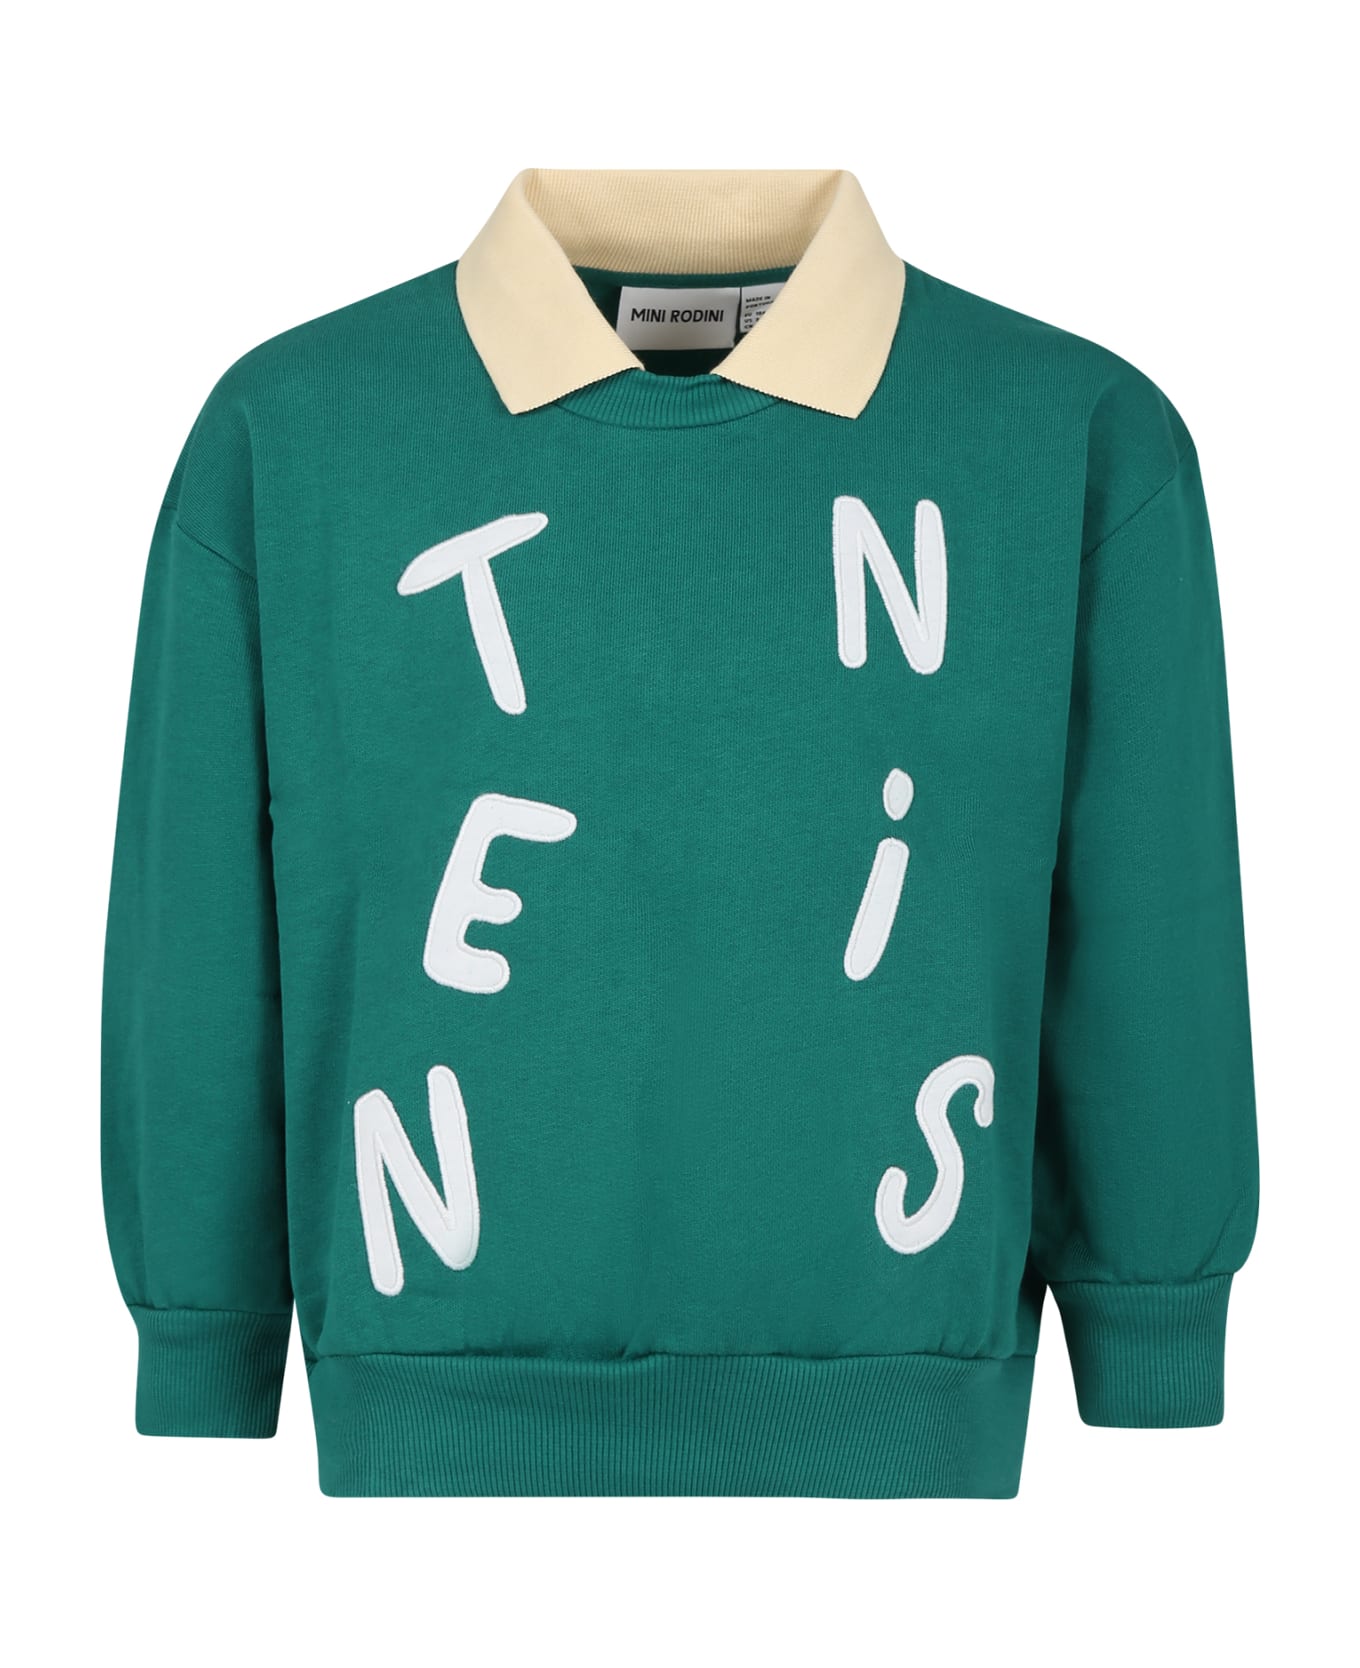 Mini Rodini Green Sweatshirt For Kids With Writing - Green